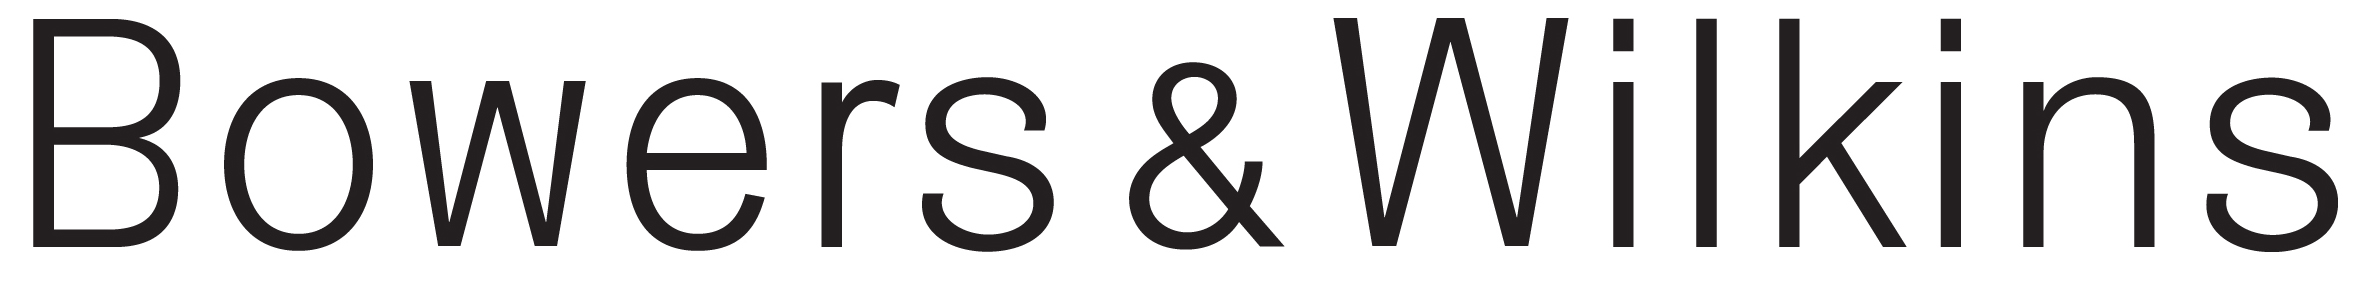 bowerswilkins logo